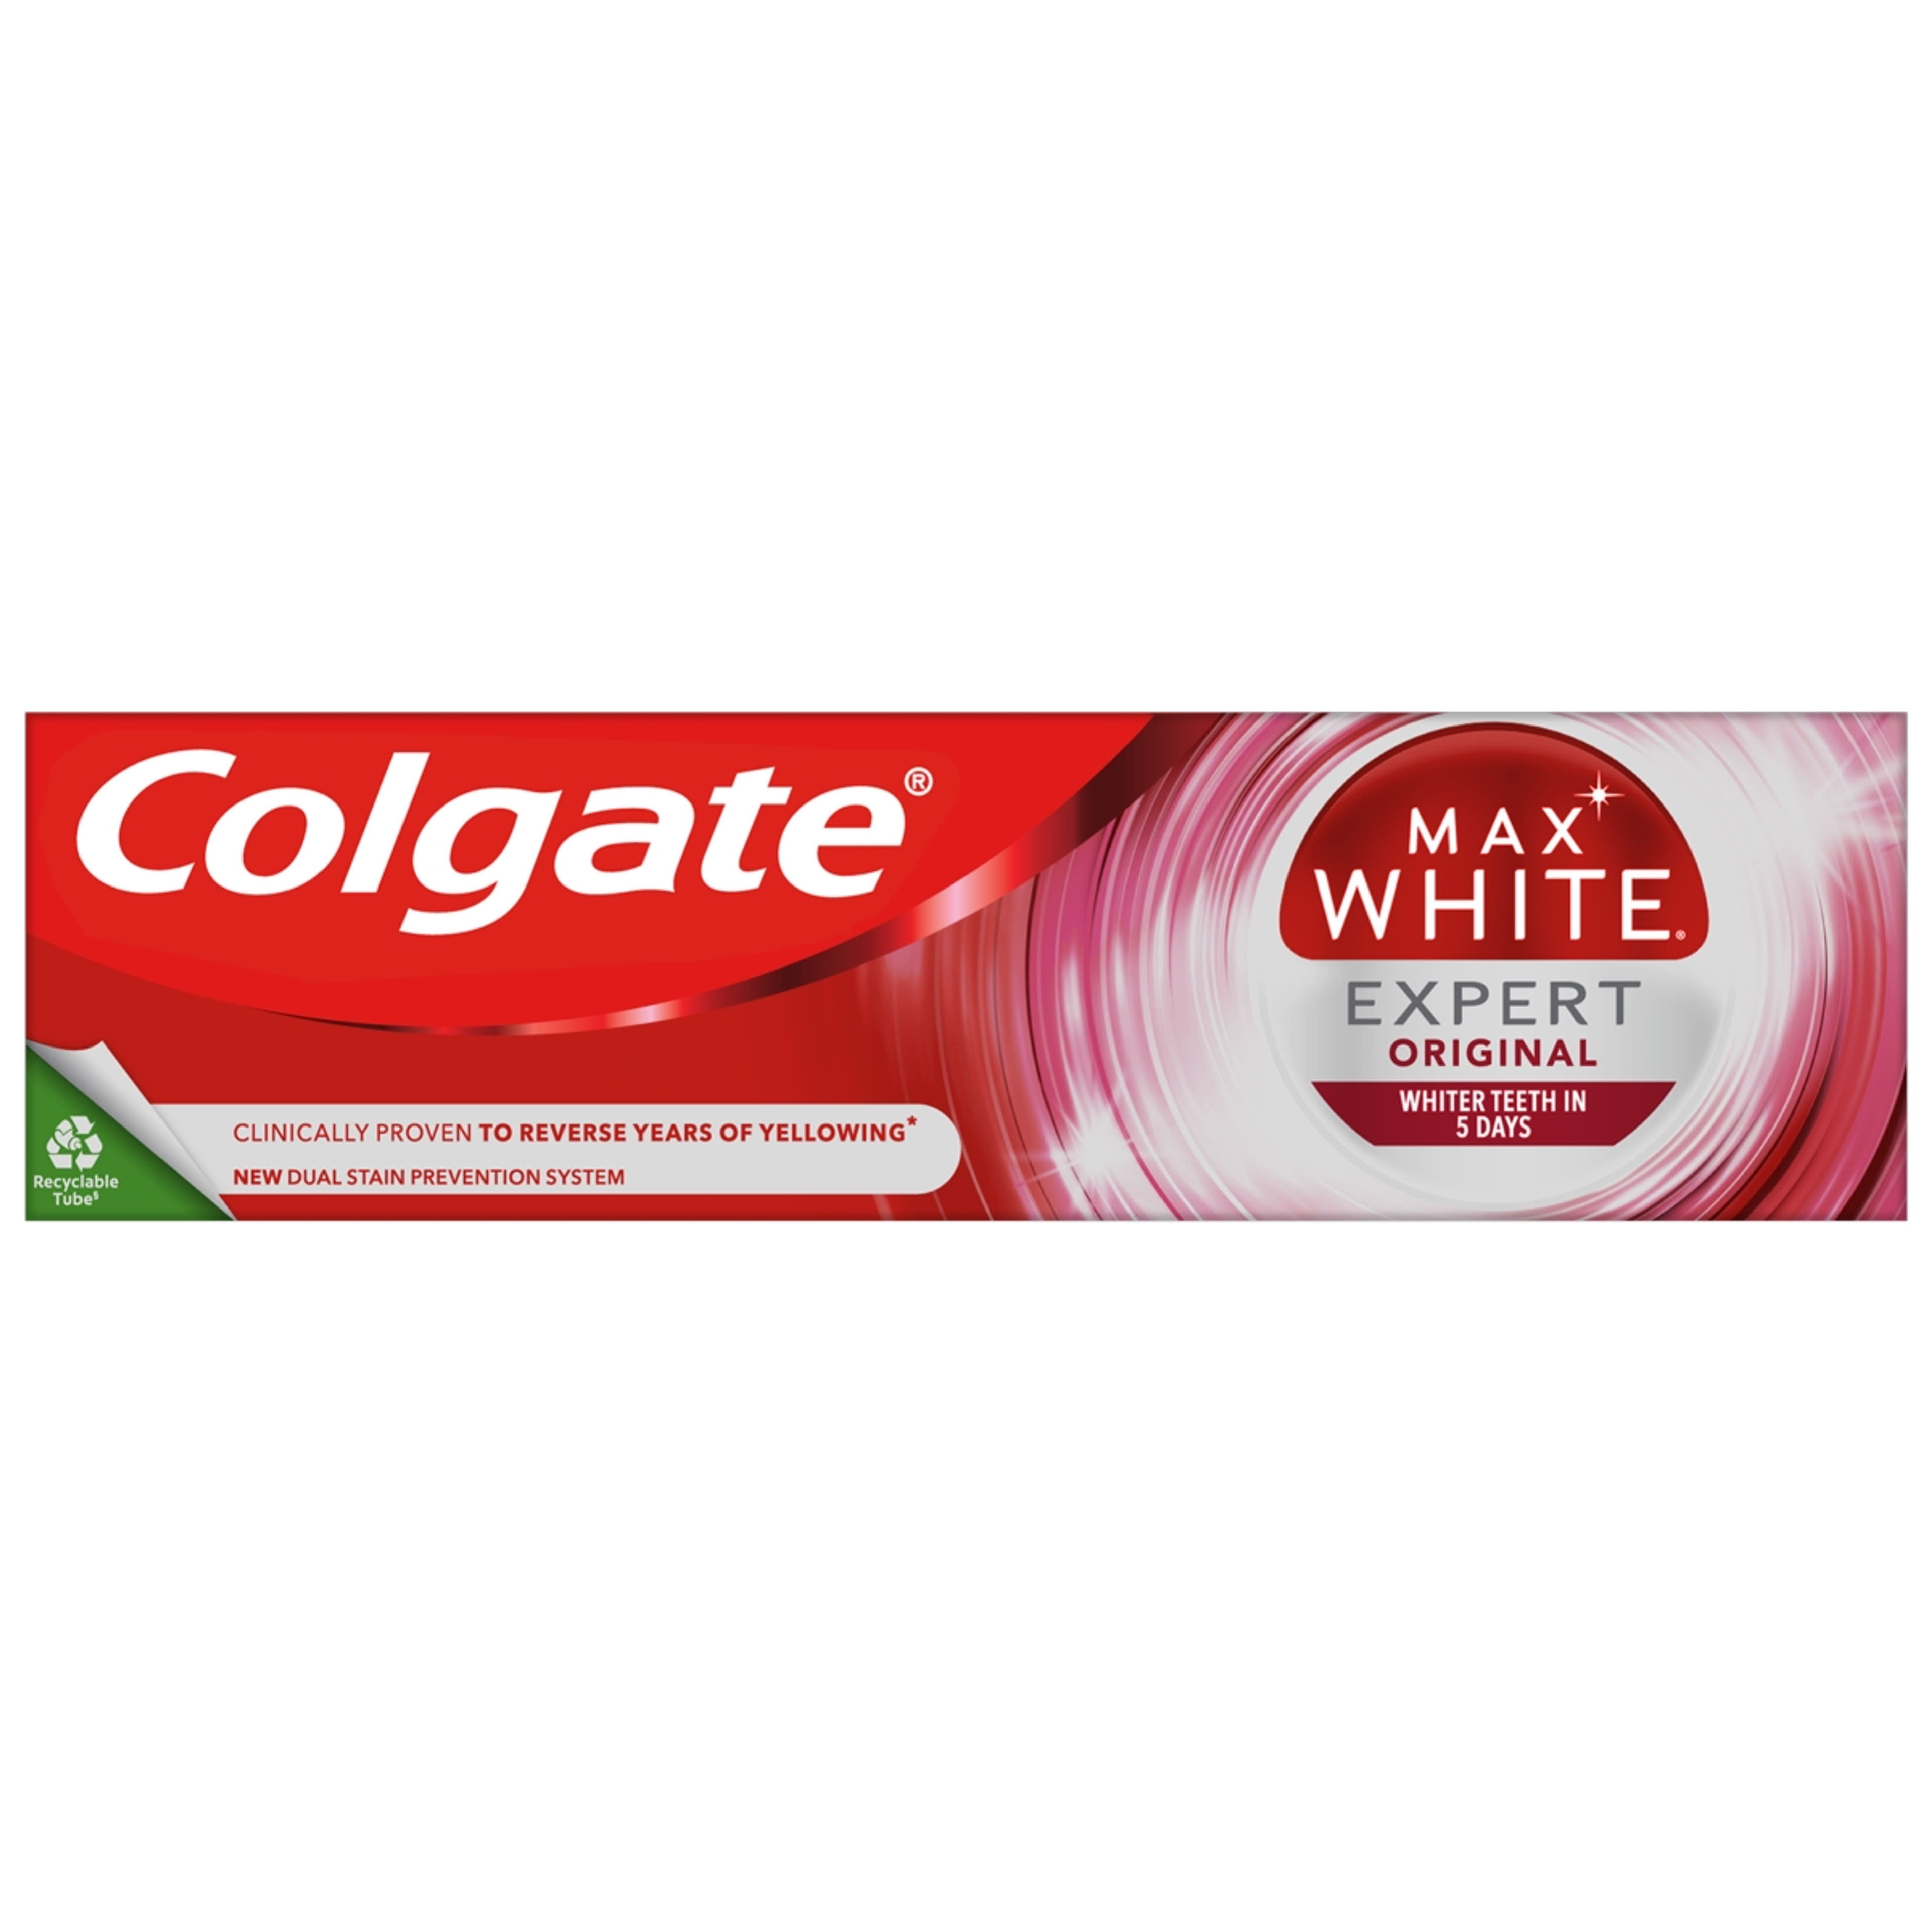 Colgate Max White Expert Original fogkrém - 75 ml-1